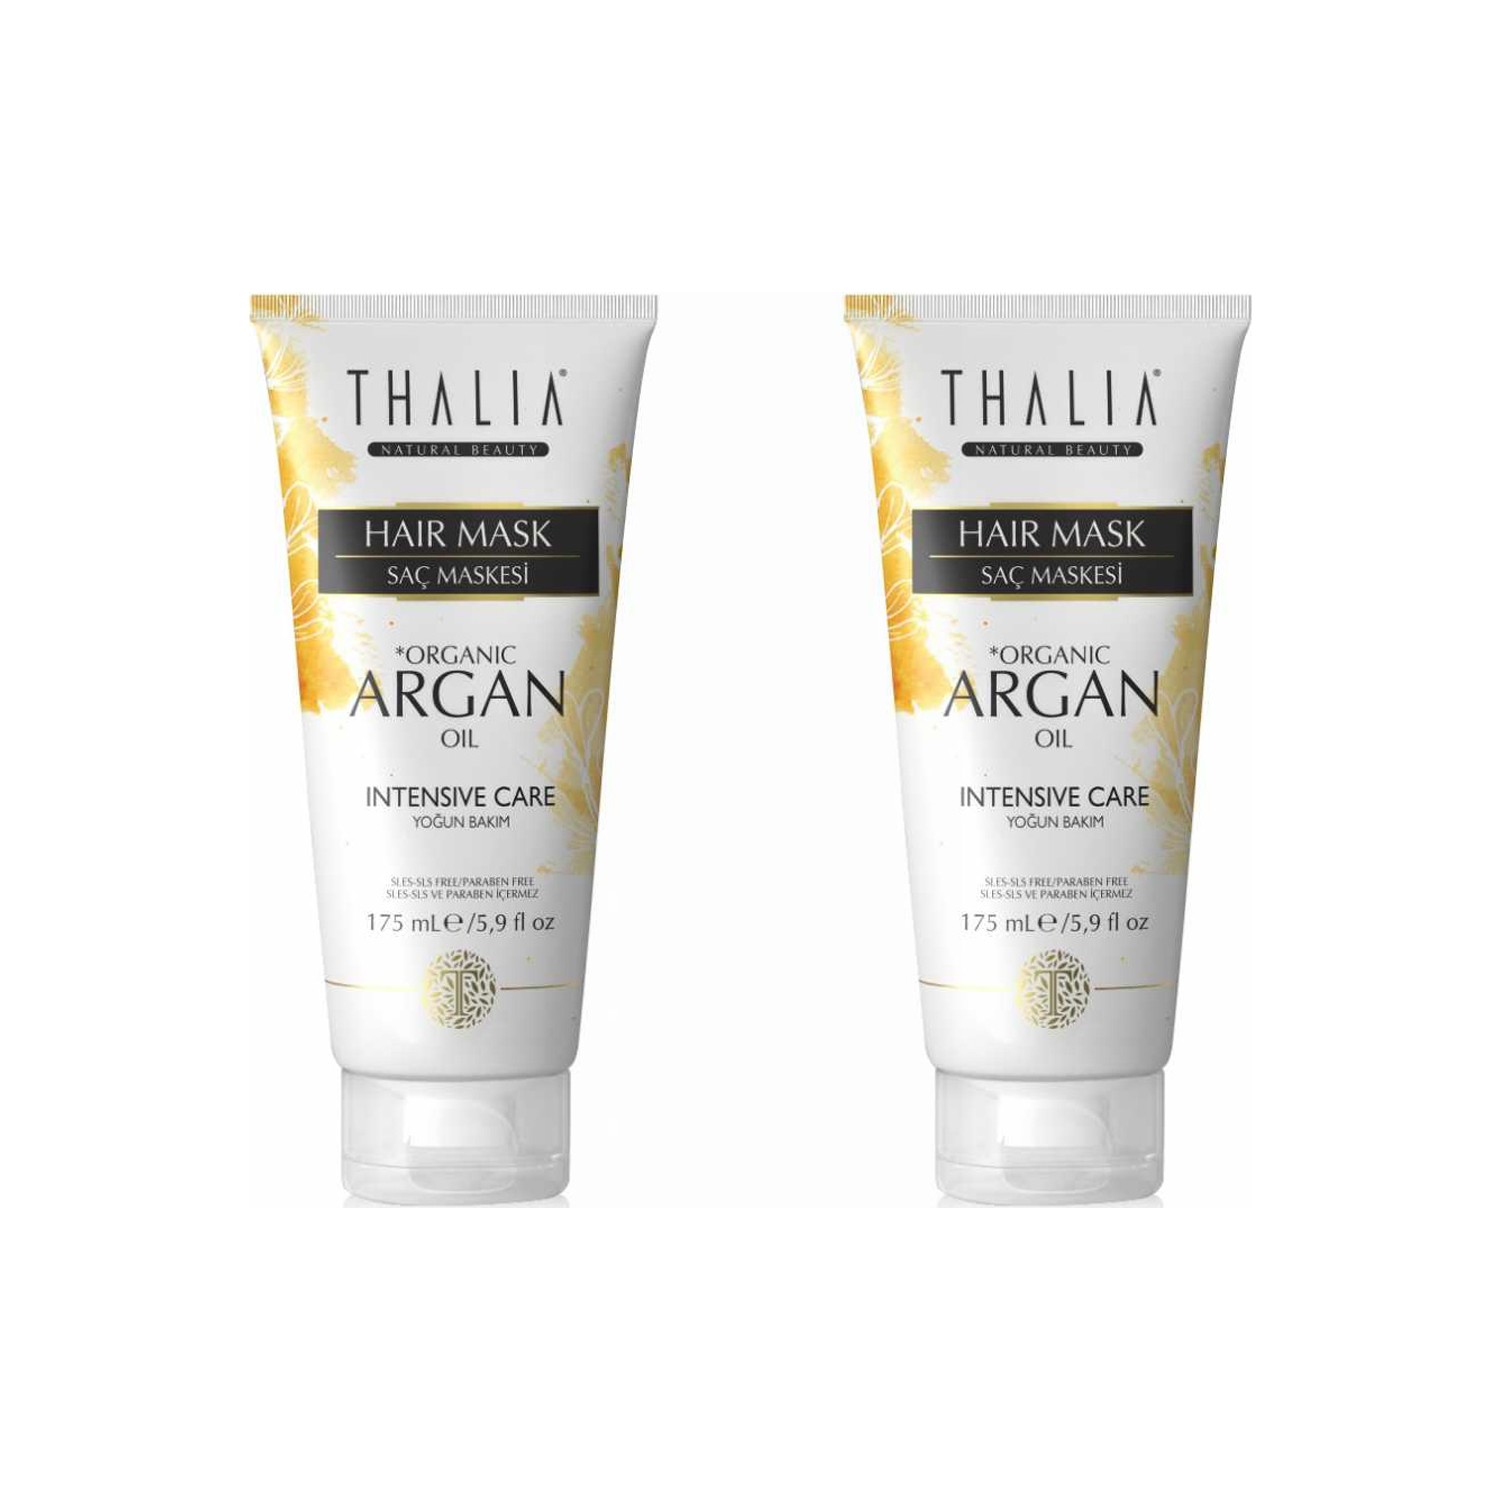 Маска для ухода за волосами Thalia с органическим аргановым маслом, 2 x 175 мл цена и фото